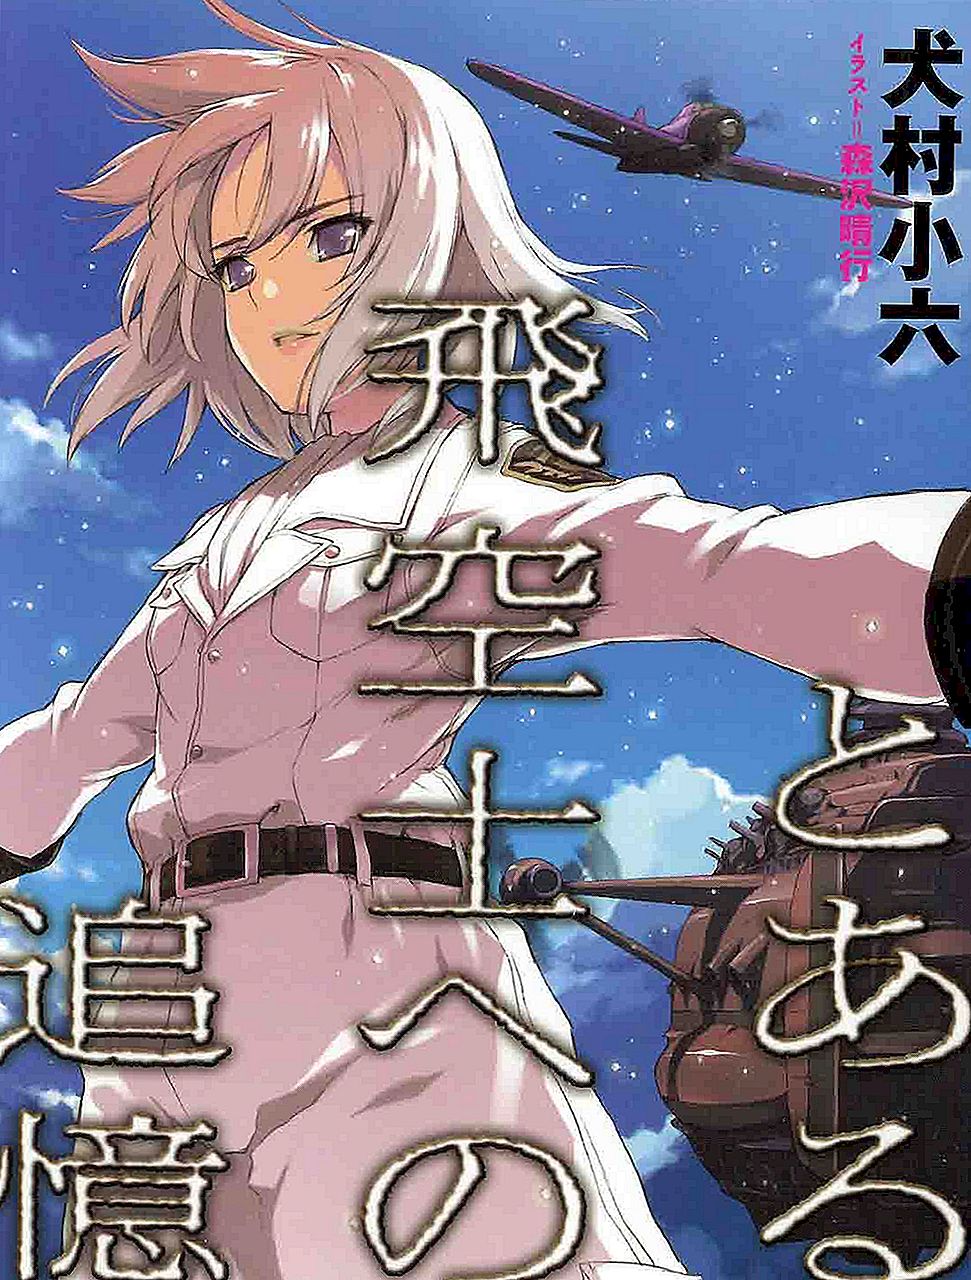 Apakah volume Campione LN yang sesuai dengan anime?